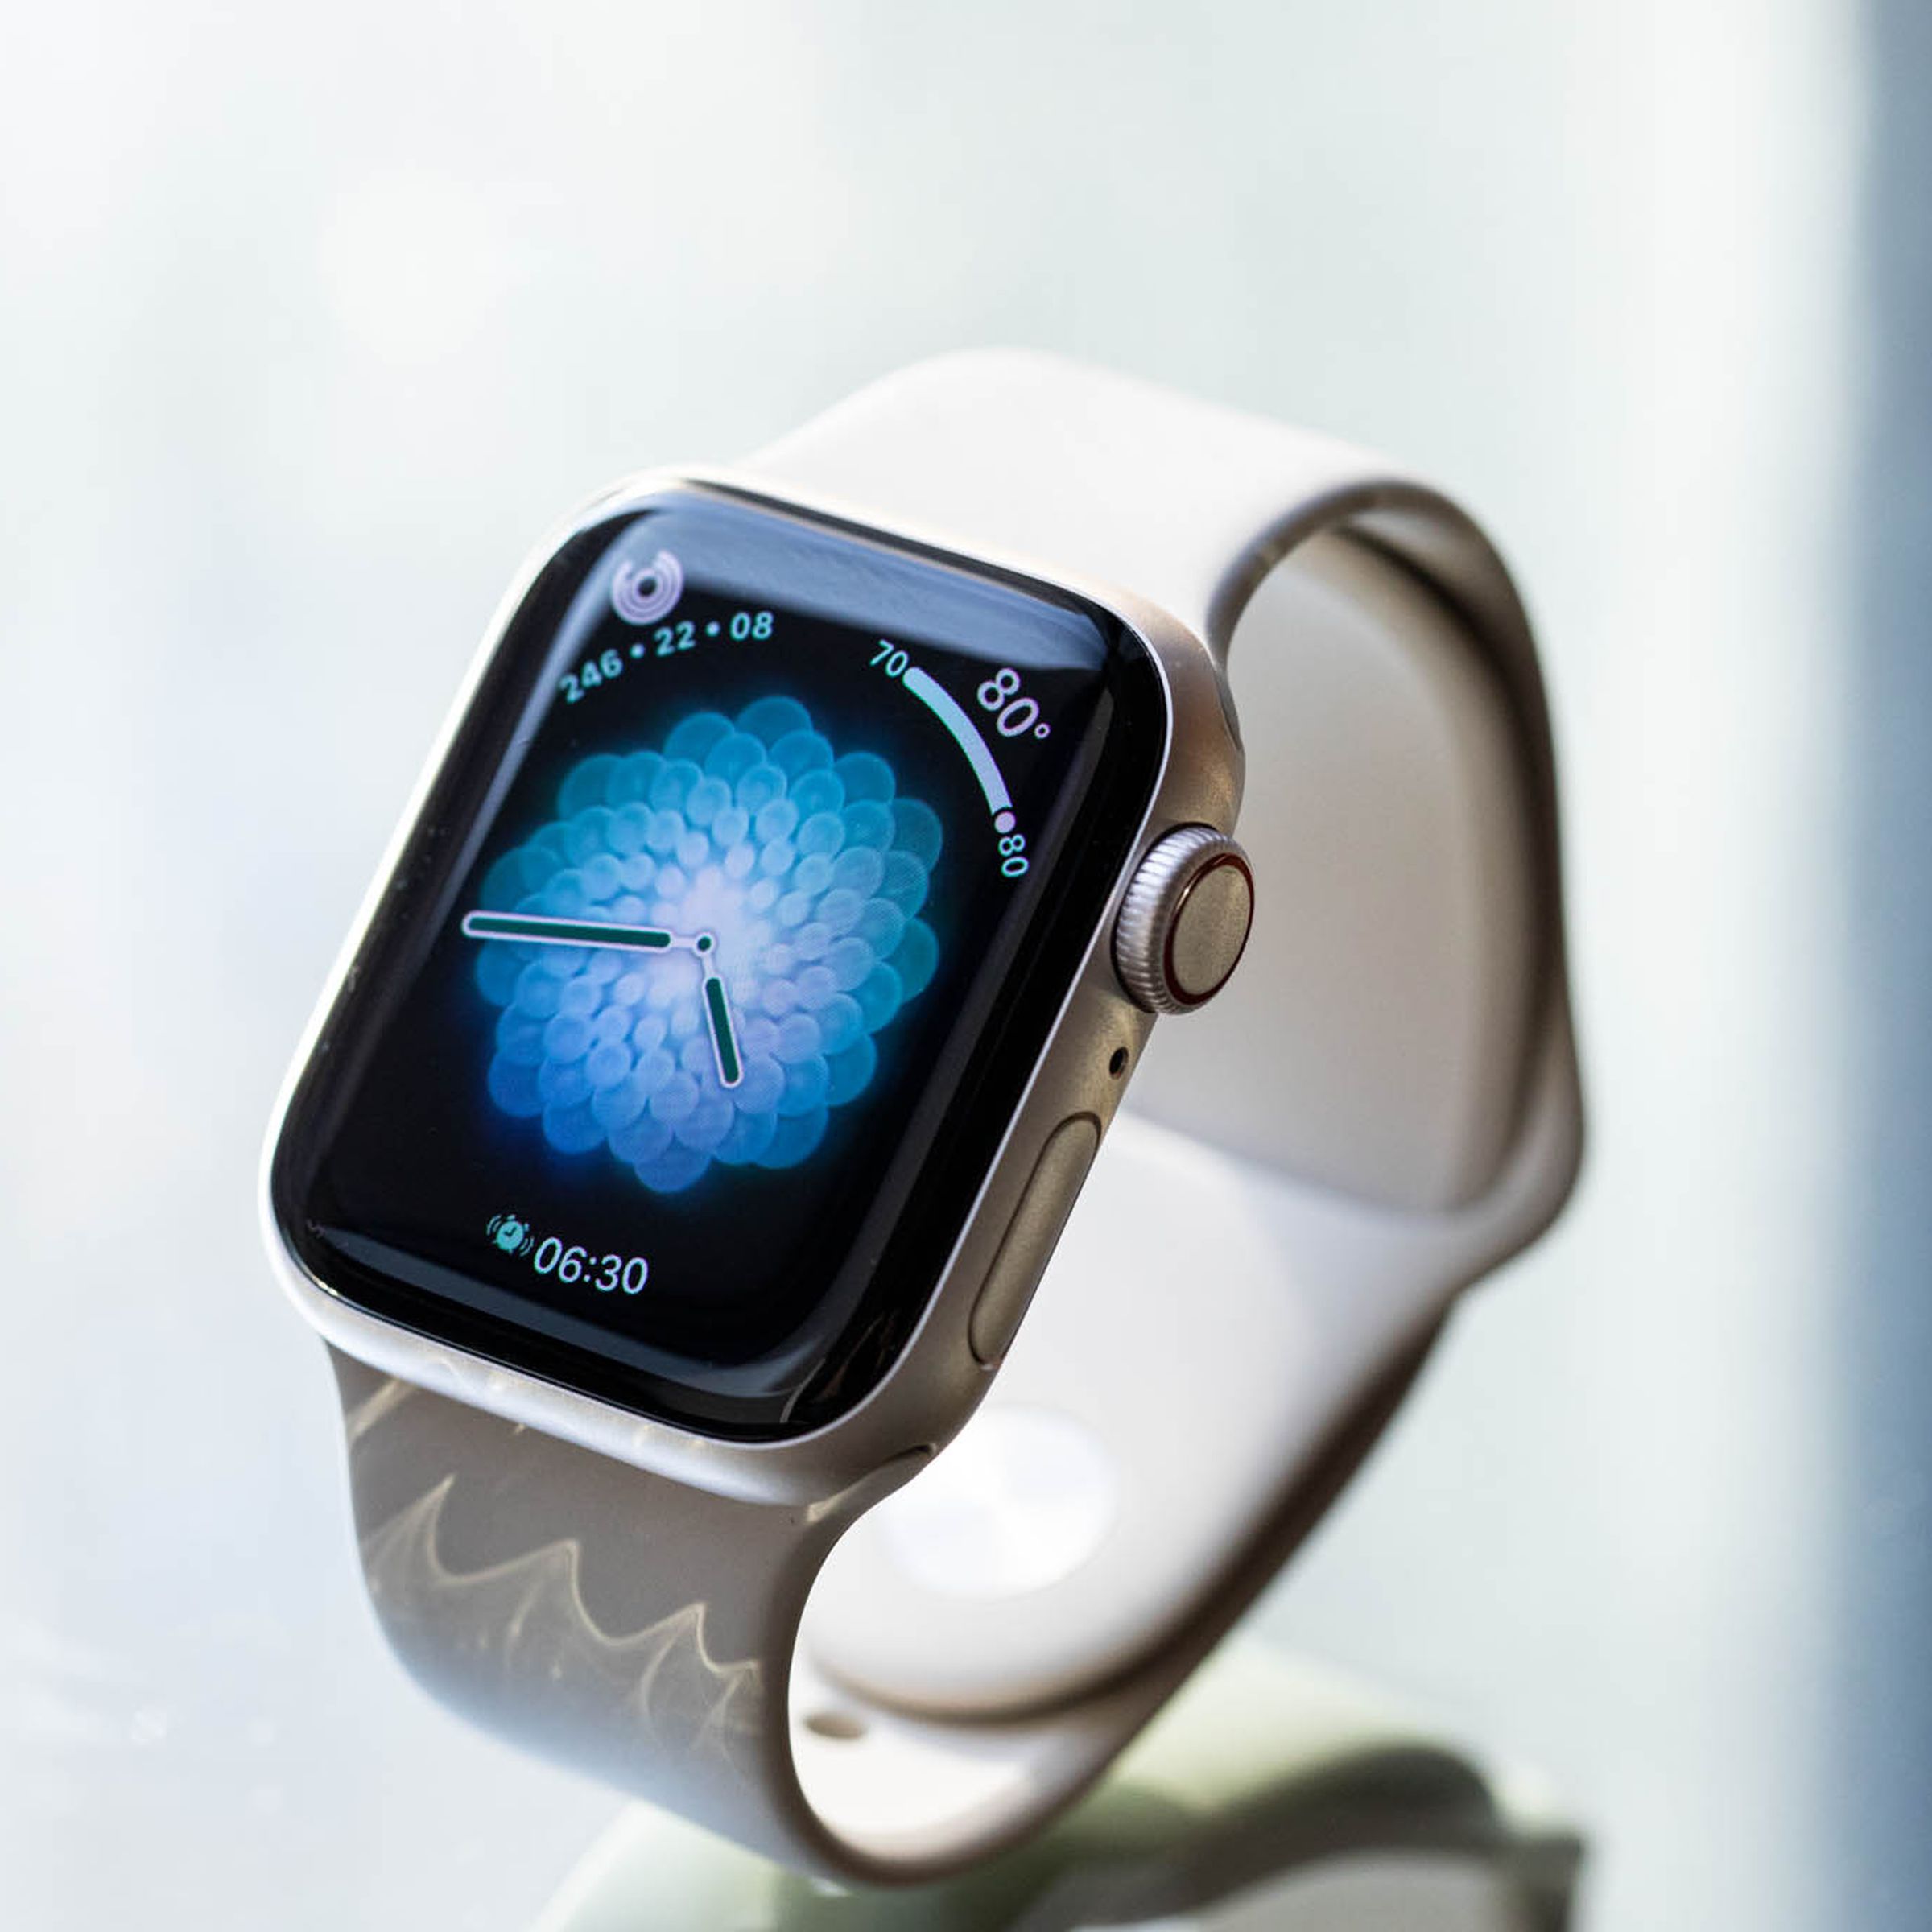 Apple Watch com watchface Breathe, que tem uma borda preta